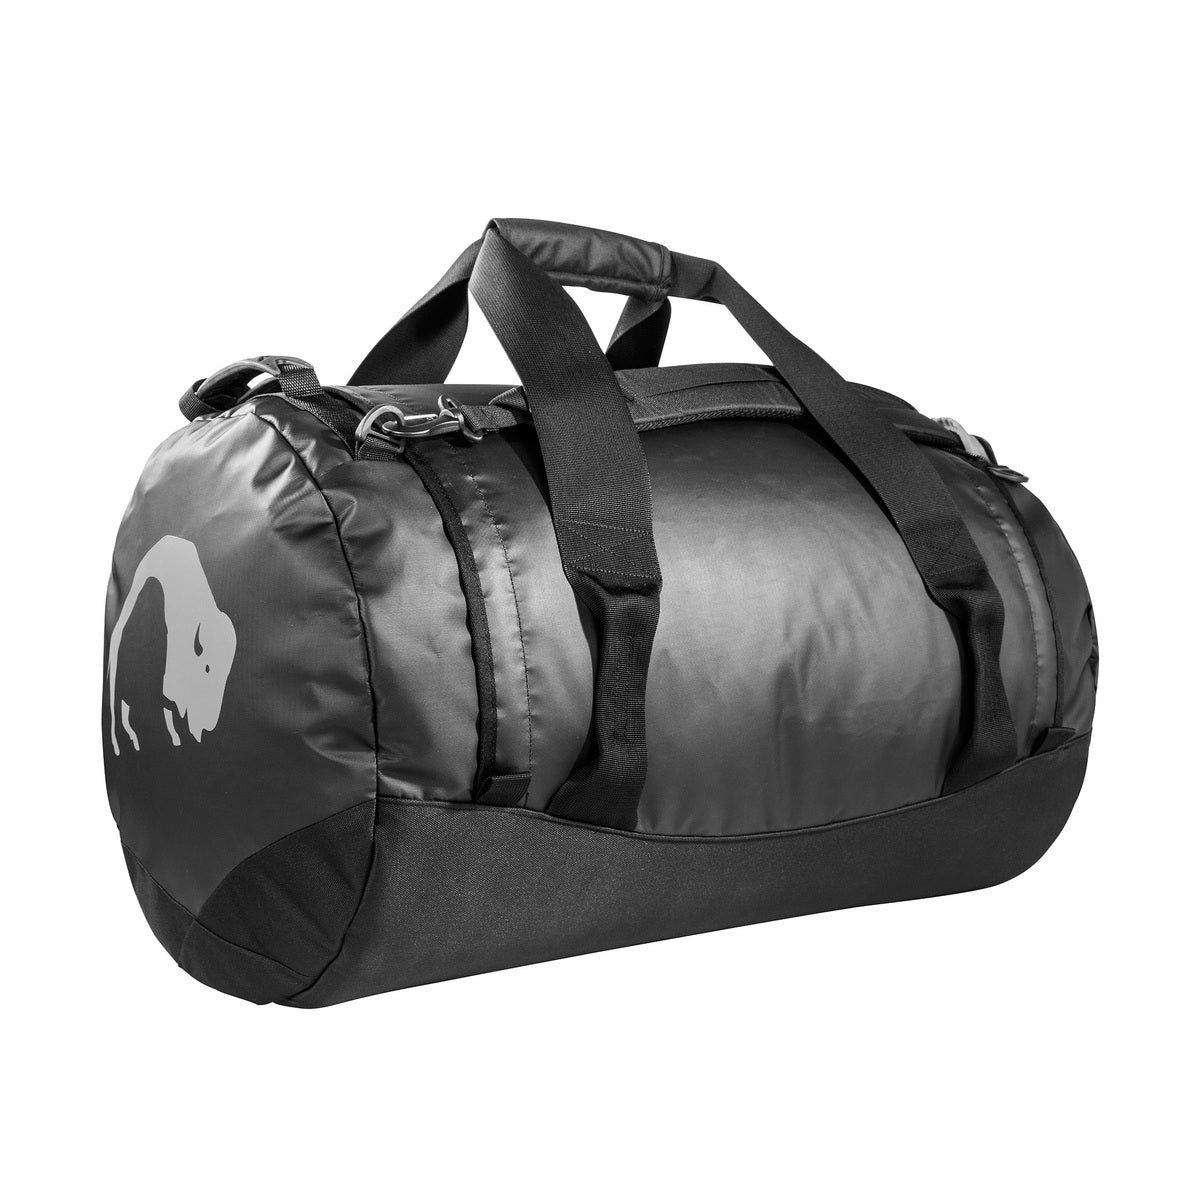 Tatonka Barrel Medium Travel bag 65 L Bags, Packs and Cases Tatonka Black Tactical Gear Supplier Tactical Distributors Australia